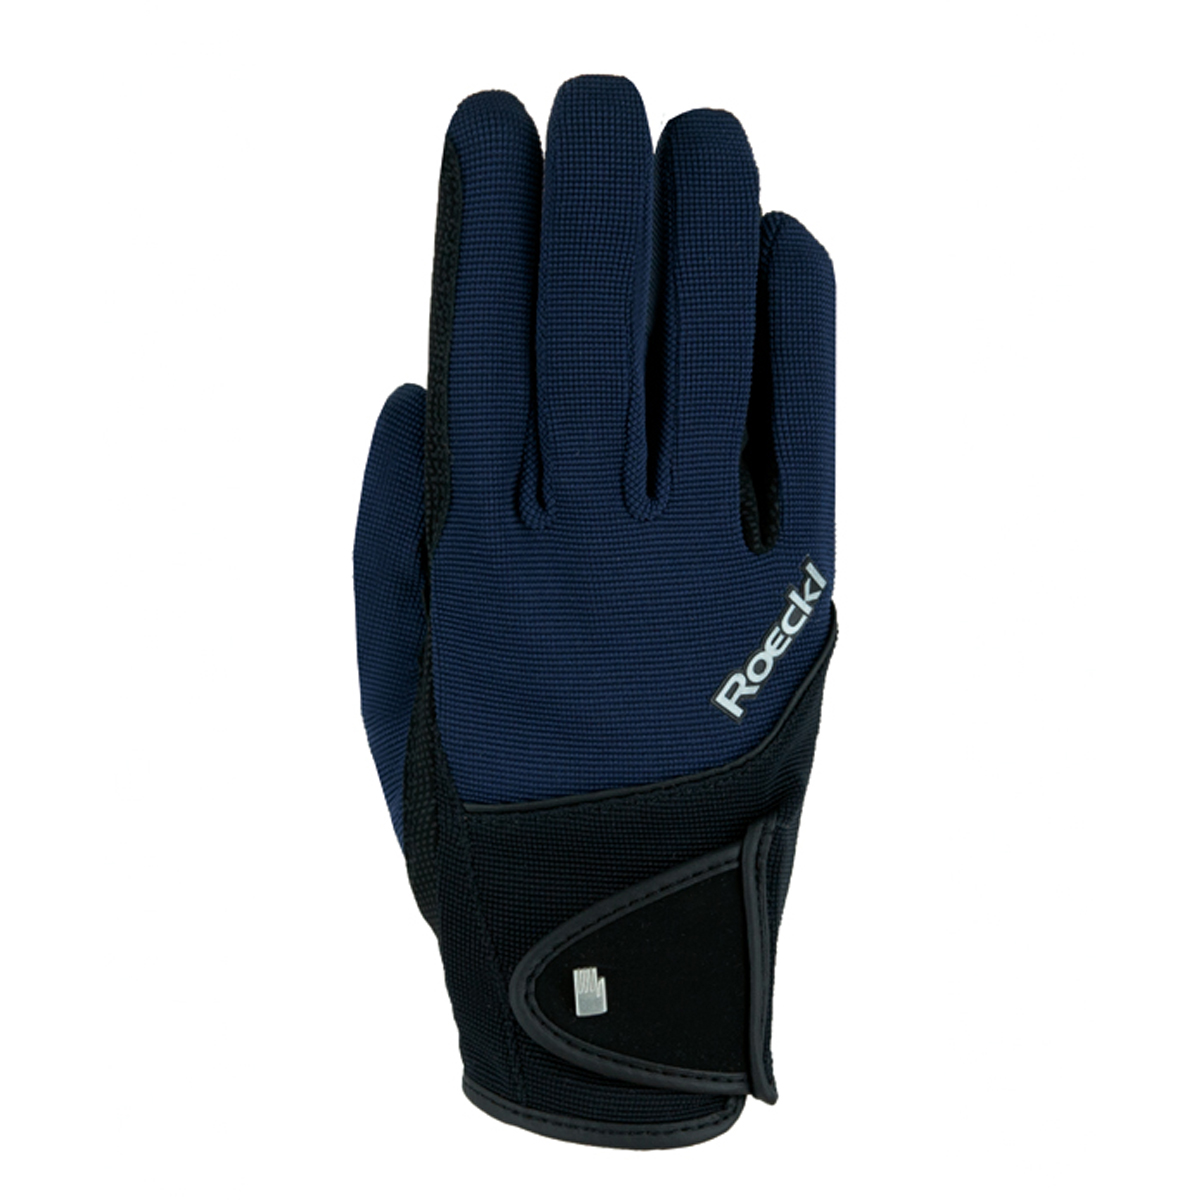 Handschoenen Roeckl Milano Winter Donkerblauw, 7,5 in donkerblauw